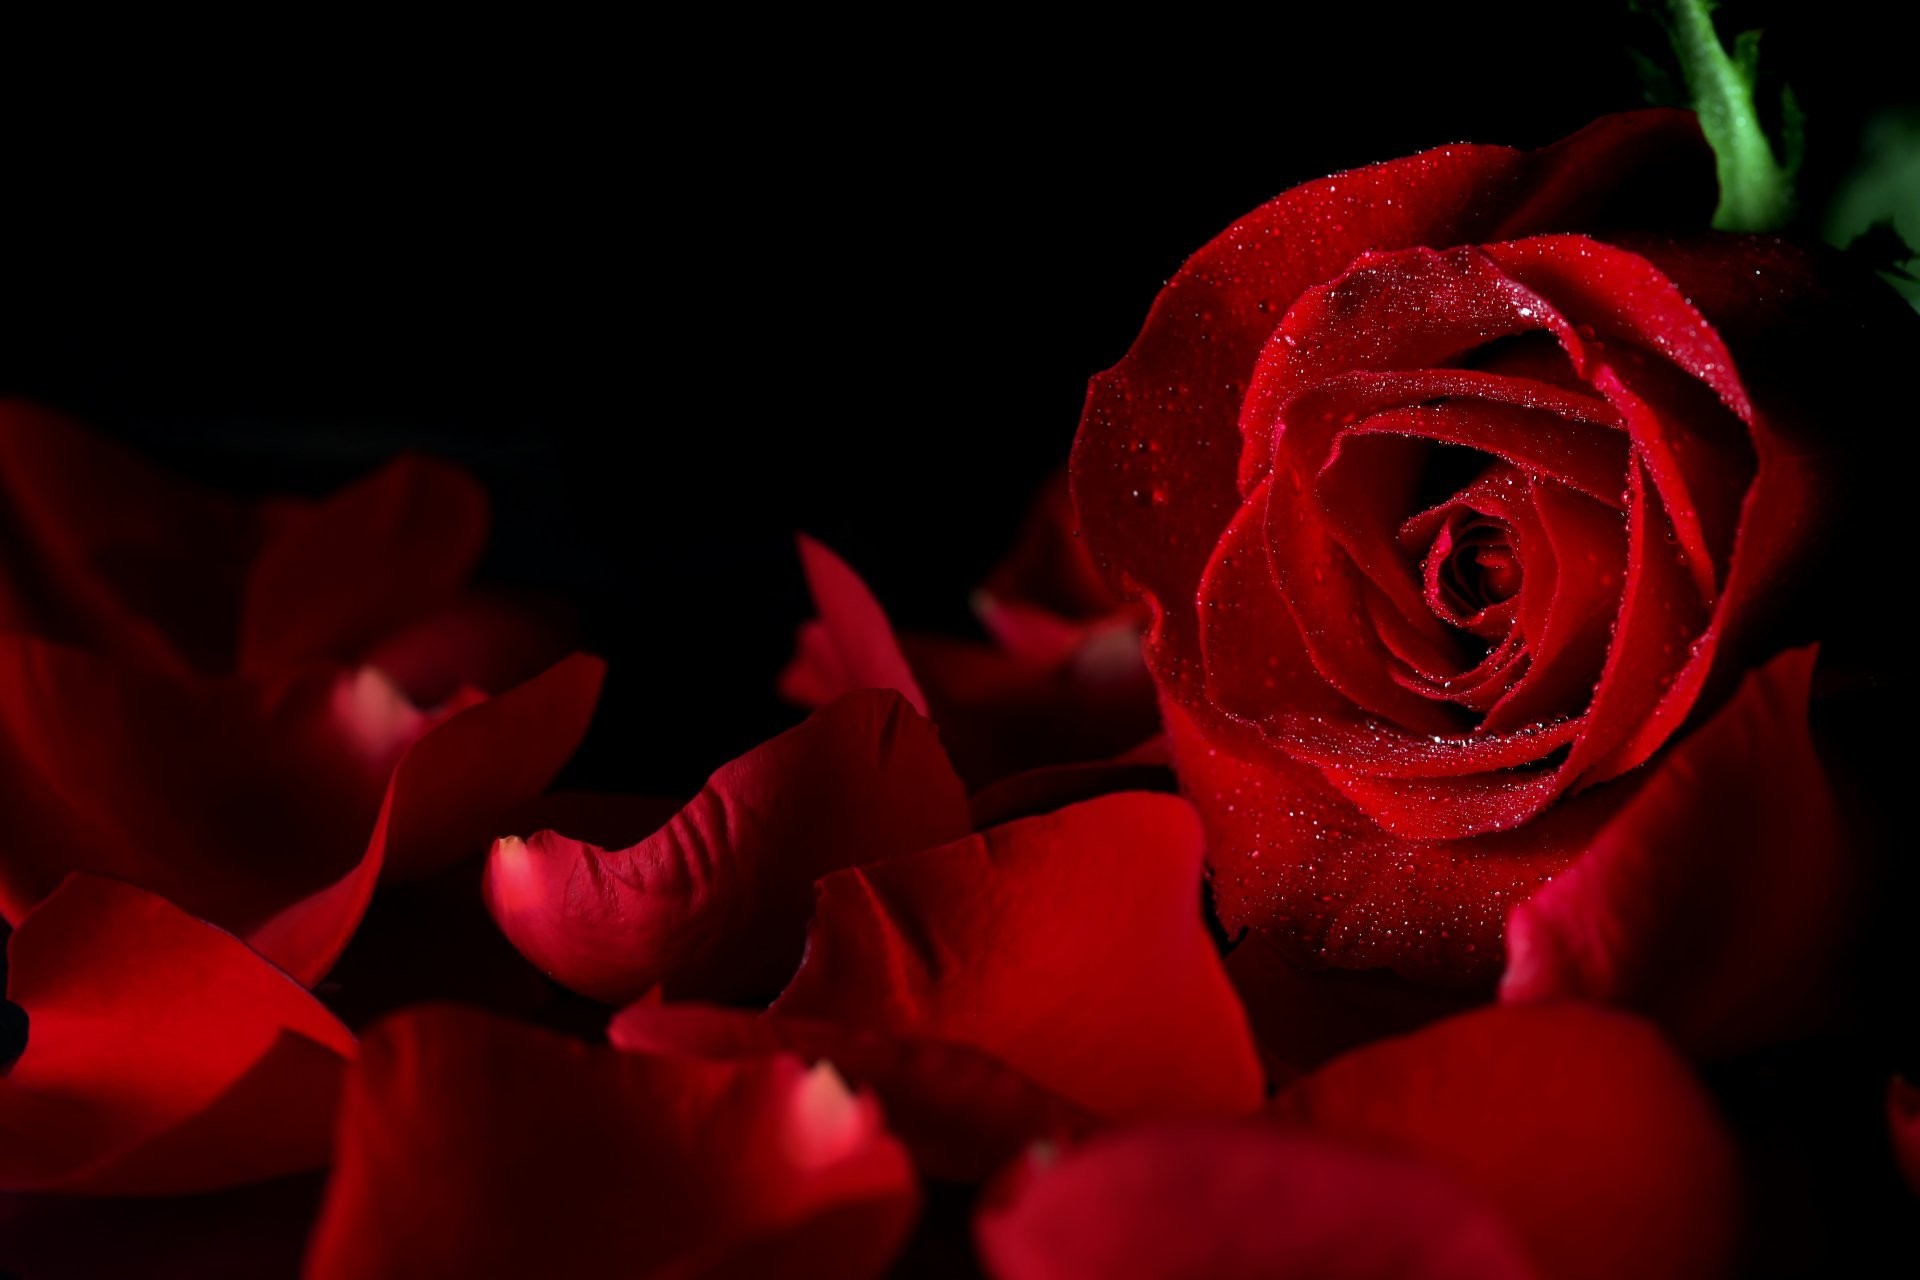 Hoa đỏ nền đen - Một hình ảnh hoa đỏ xinh đẹp trên nền đen sẽ khiến bạn phải trầm trồ. Sự tương phản giữa hai màu sắc này tạo ra hiệu ứng rất cuốn hút. Hãy cùng chiêm ngưỡng vẻ đẹp đầy bí ẩn của hoa đỏ nền đen.